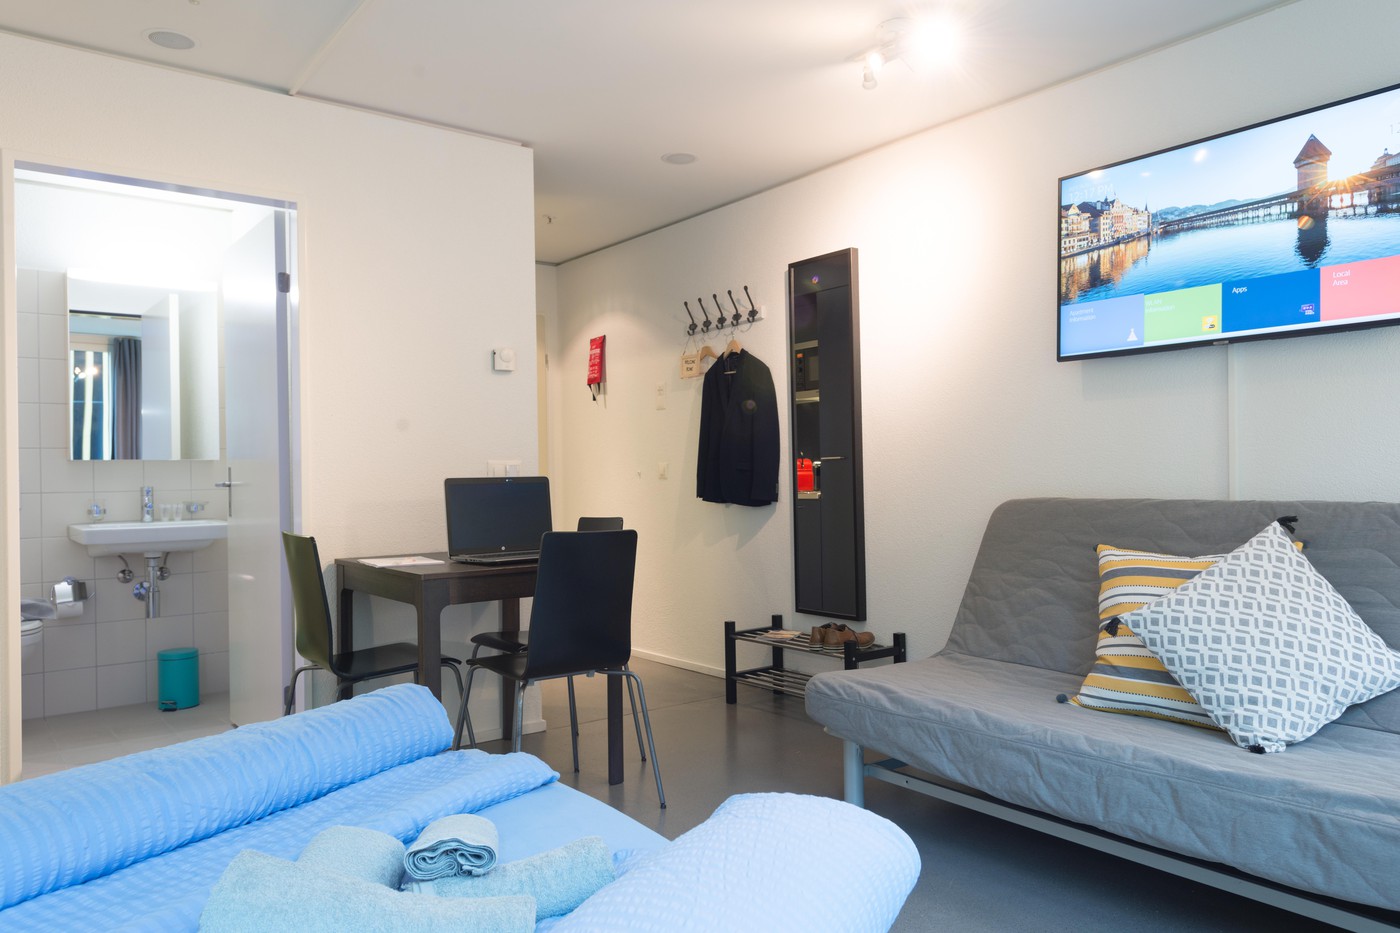 1 Zimmer-Möblierte Wohnung in Luzern mieten - Flatfox